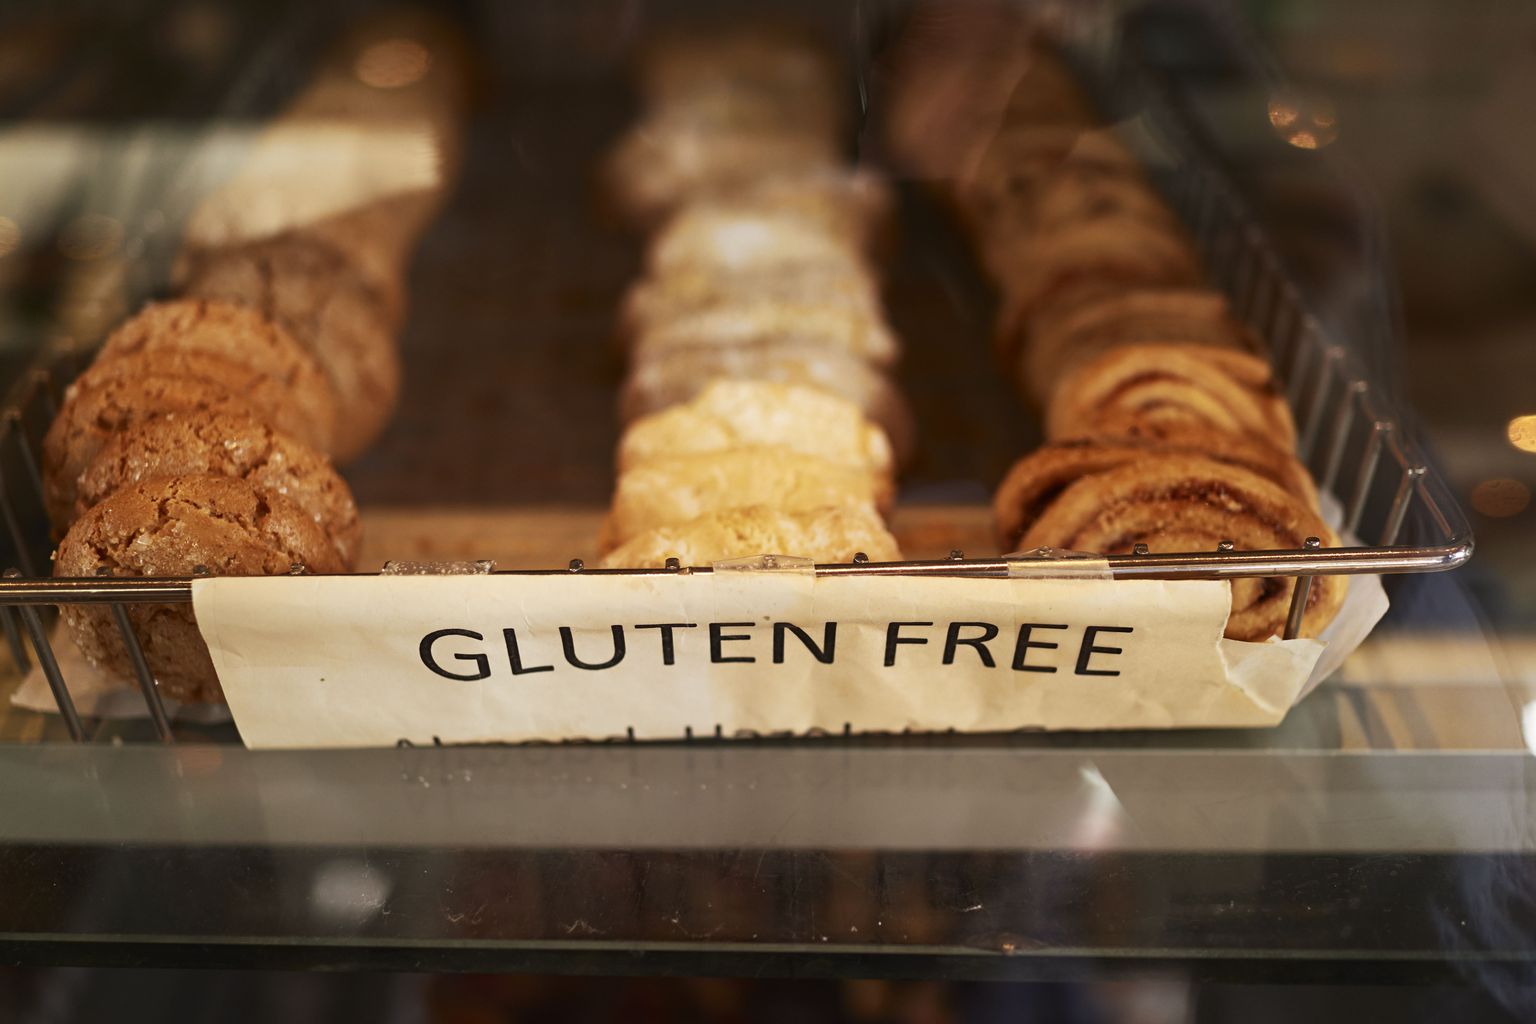 Tervetele inimestele pole gluteeni vältimine kasulik.